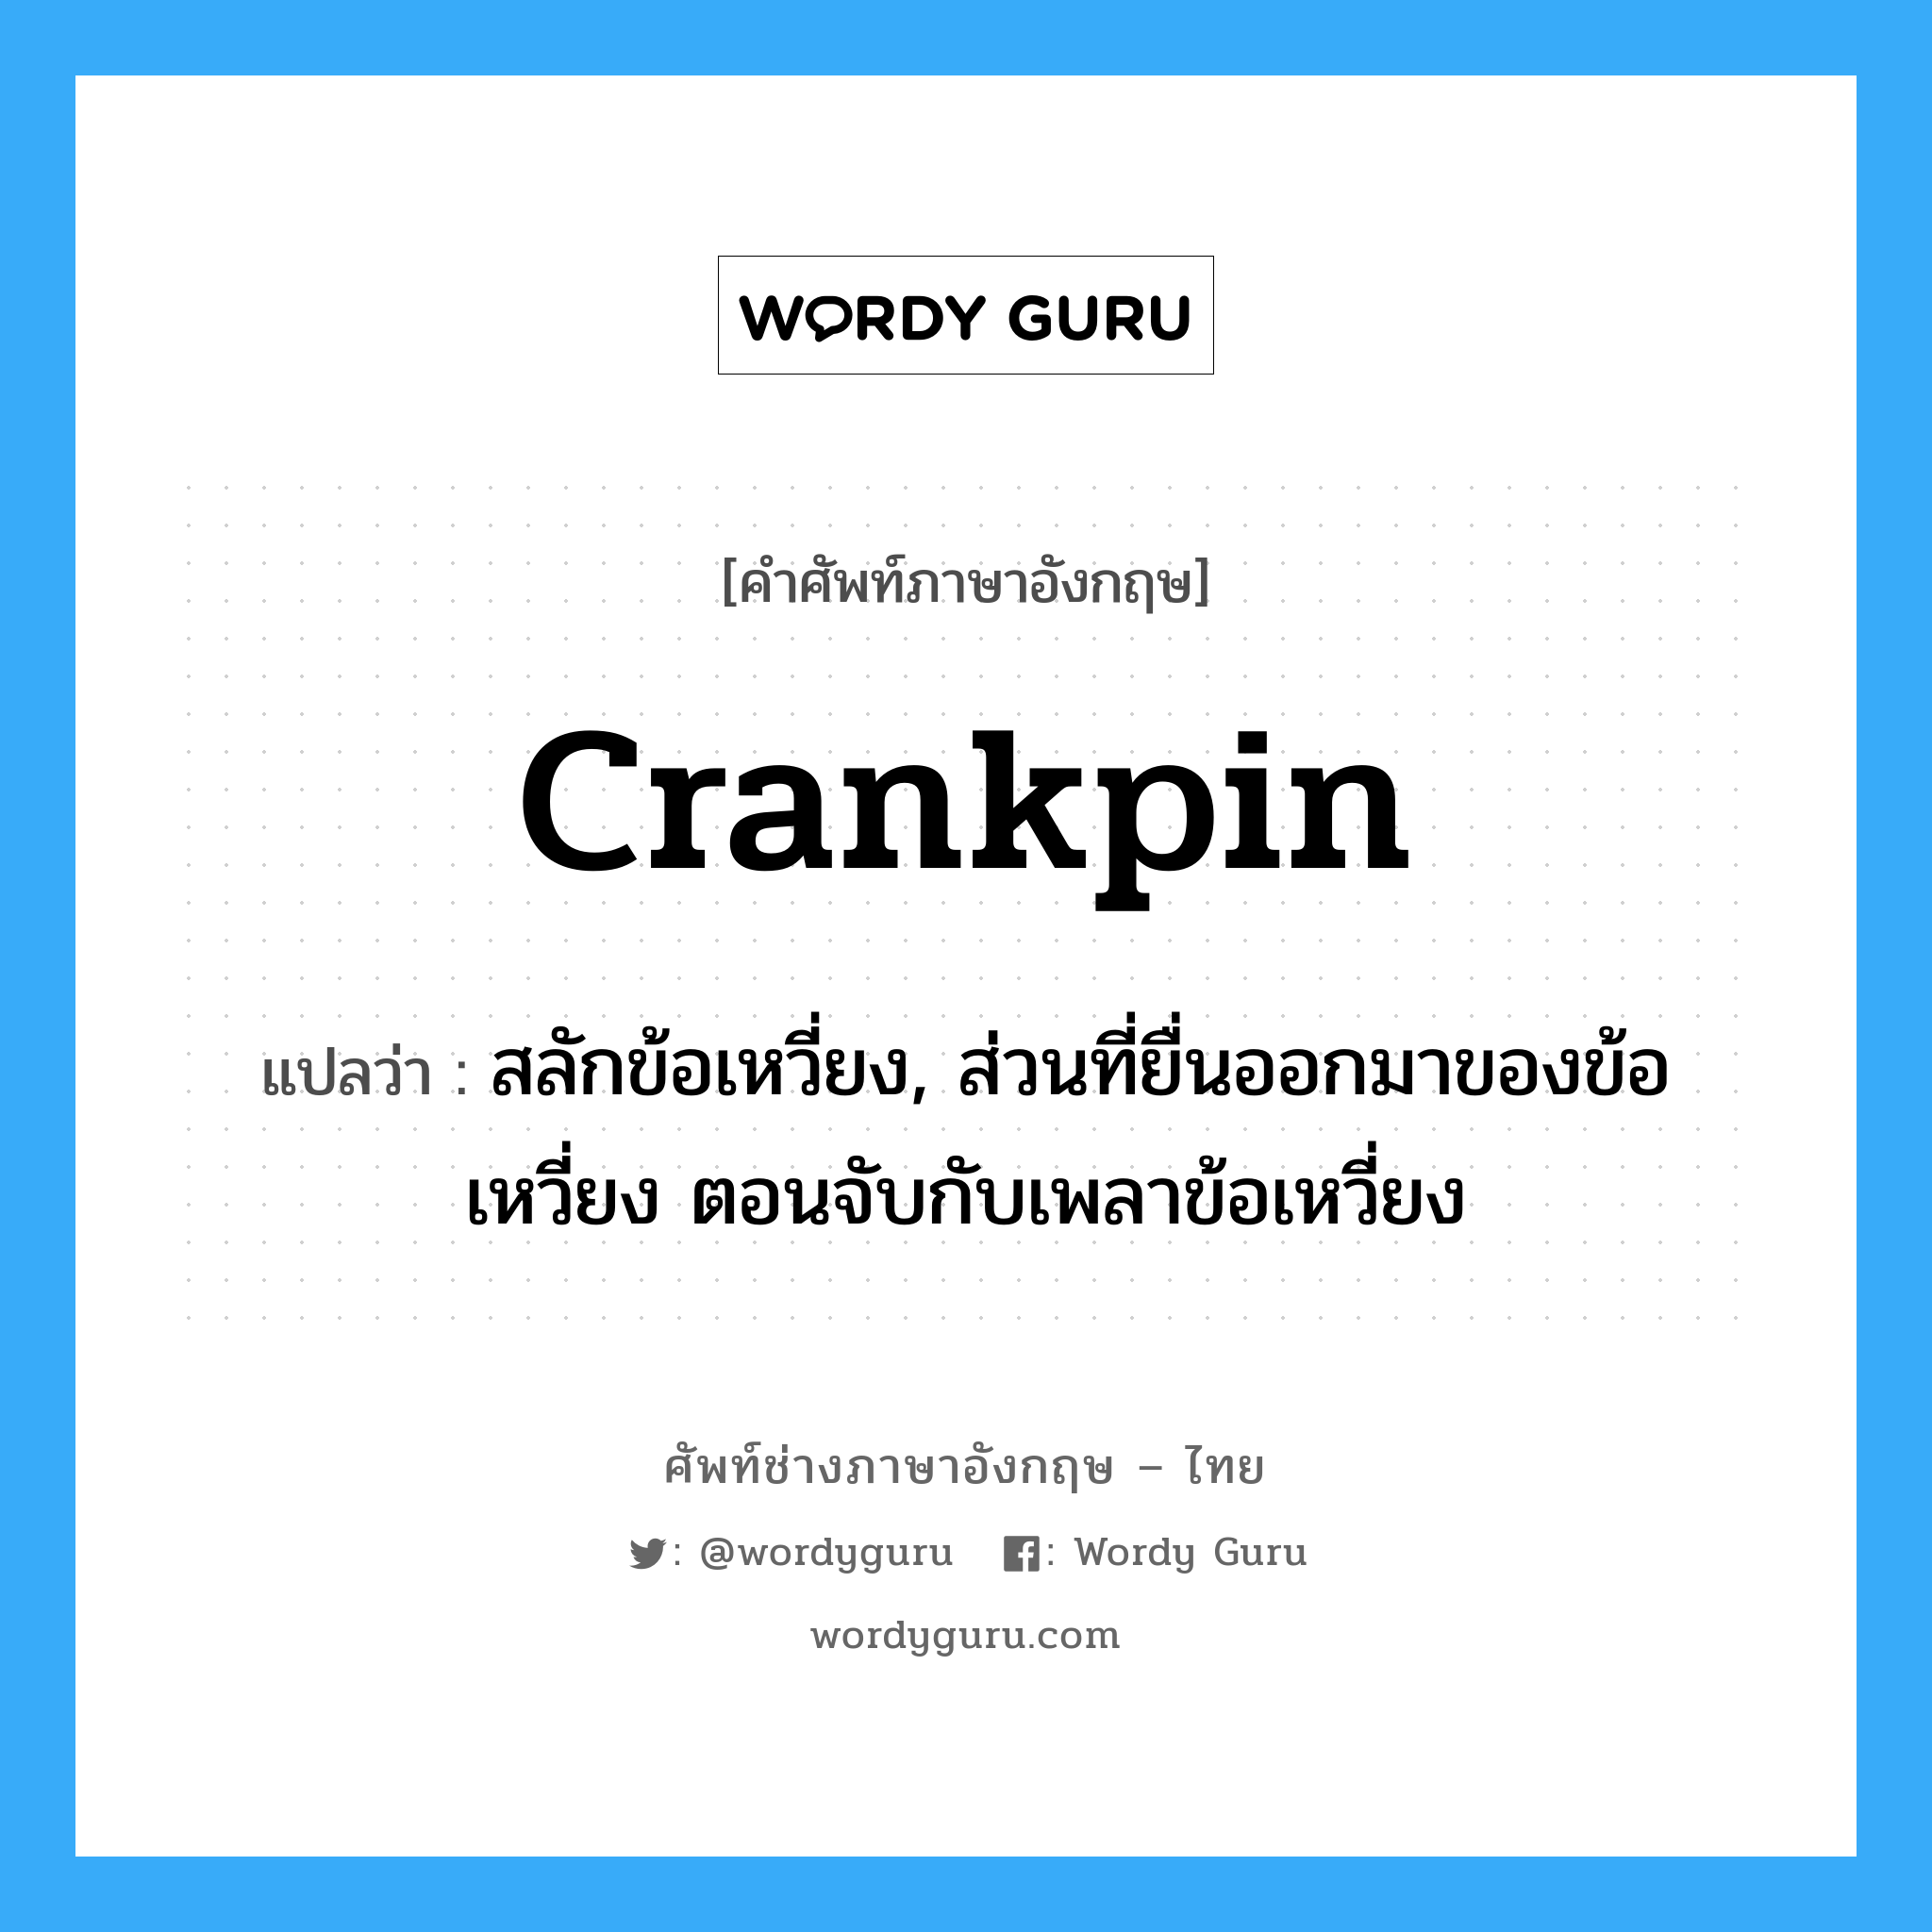 crankpin แปลว่า?, คำศัพท์ช่างภาษาอังกฤษ - ไทย crankpin คำศัพท์ภาษาอังกฤษ crankpin แปลว่า สลักข้อเหวี่ยง, ส่วนที่ยื่นออกมาของข้อเหวี่ยง ตอนจับกับเพลาข้อเหวี่ยง